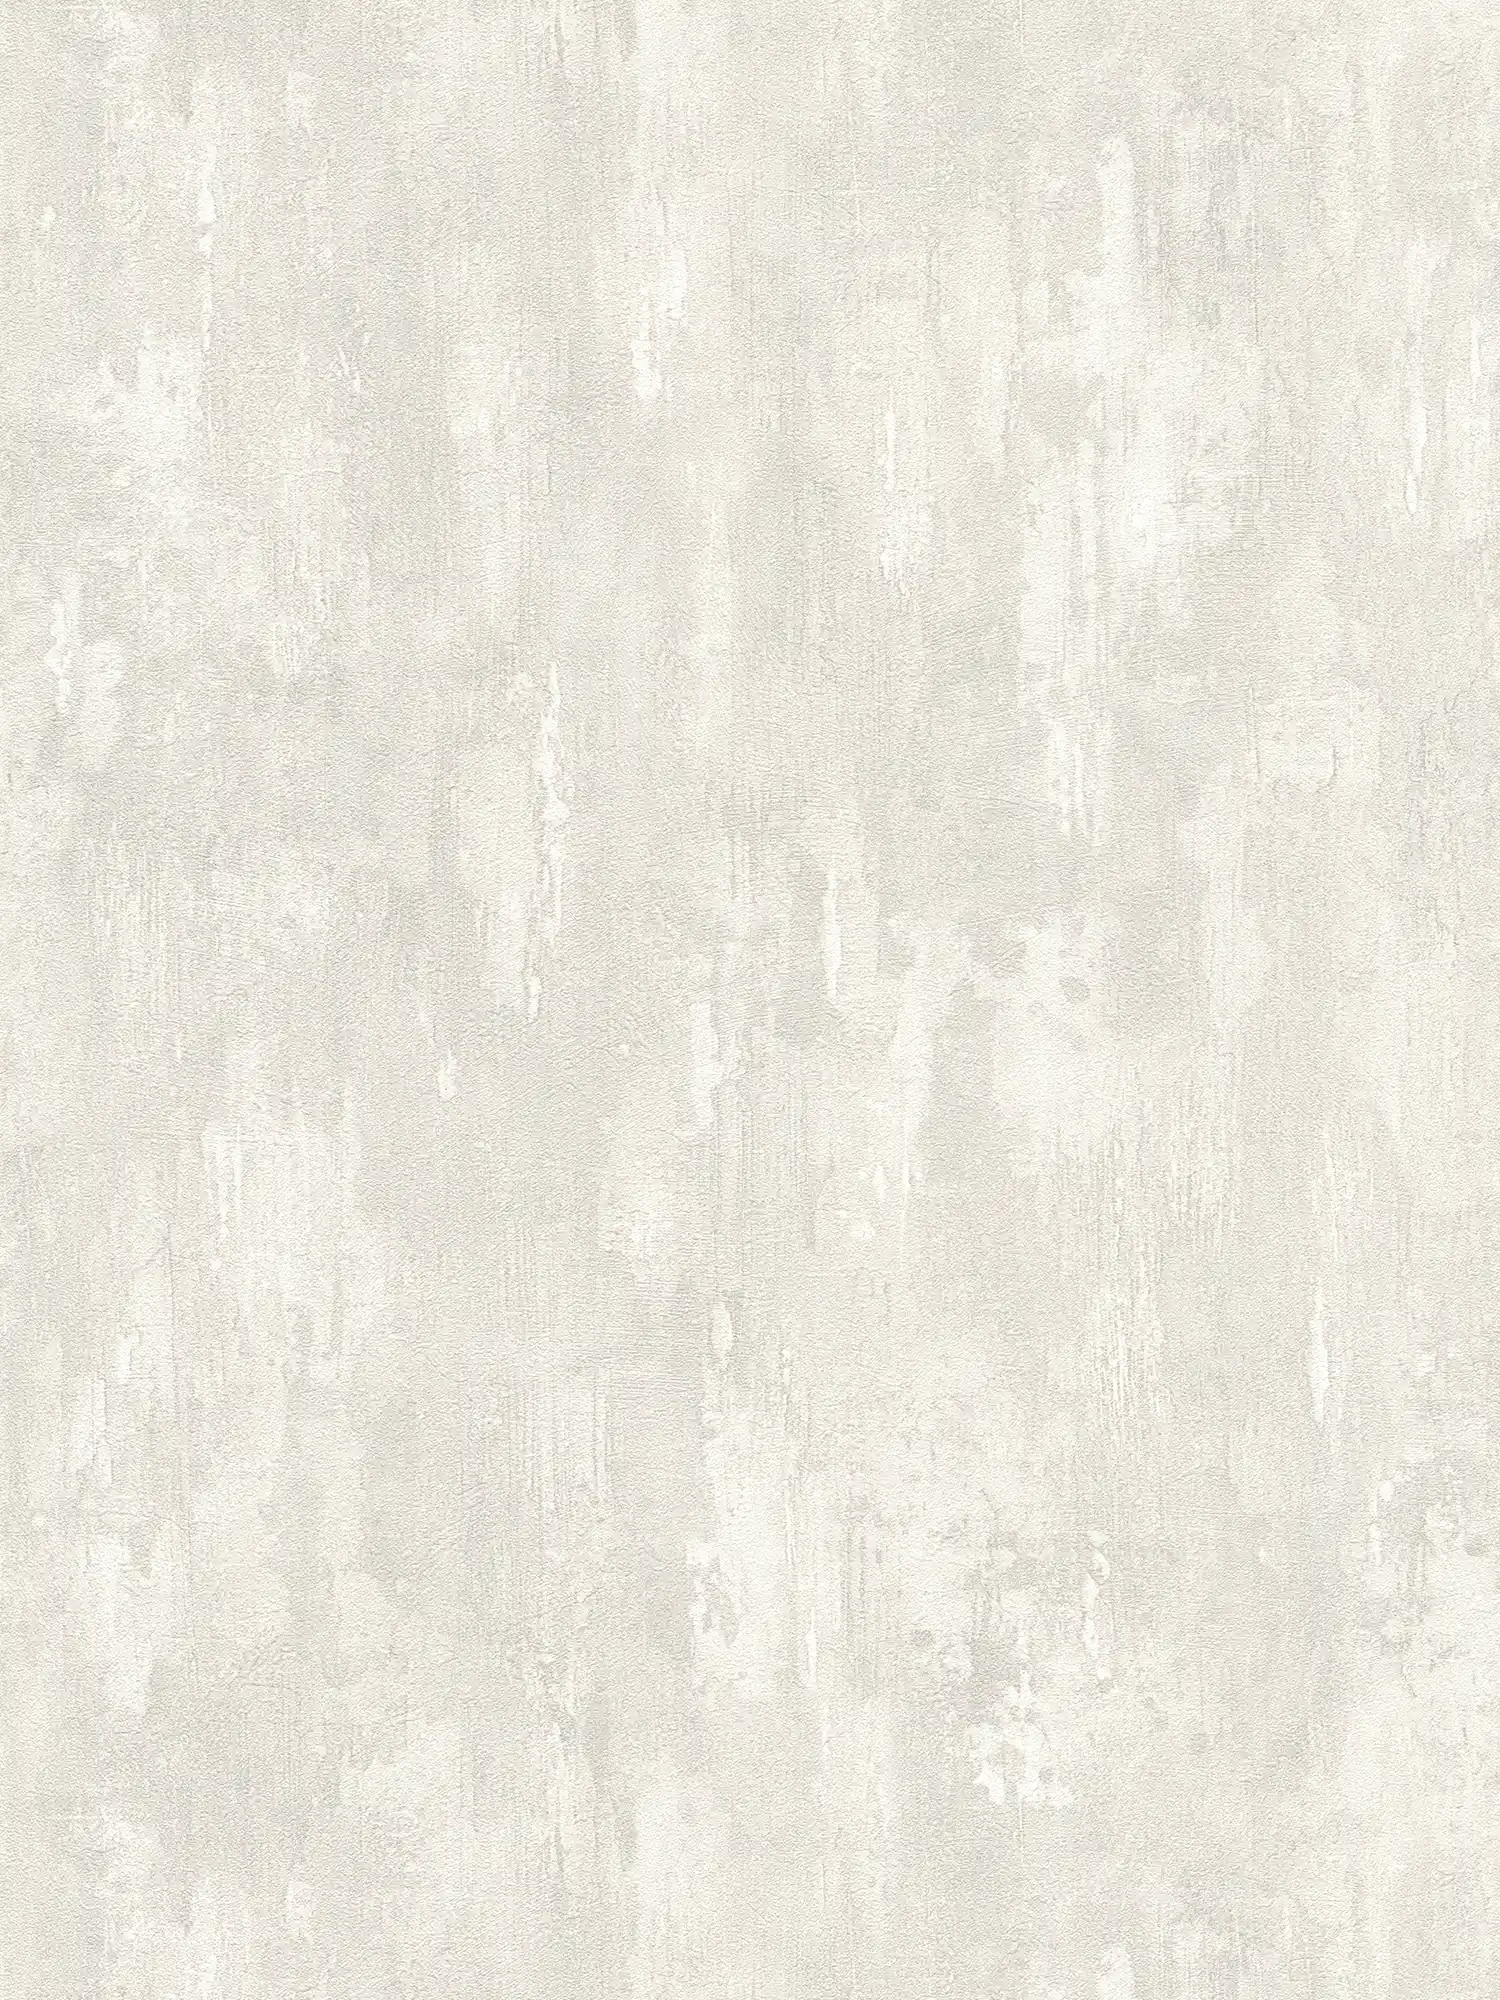 Tapete mit Putz-Struktur, Betonoptik und Farbverlauf – Grau, Weiß
